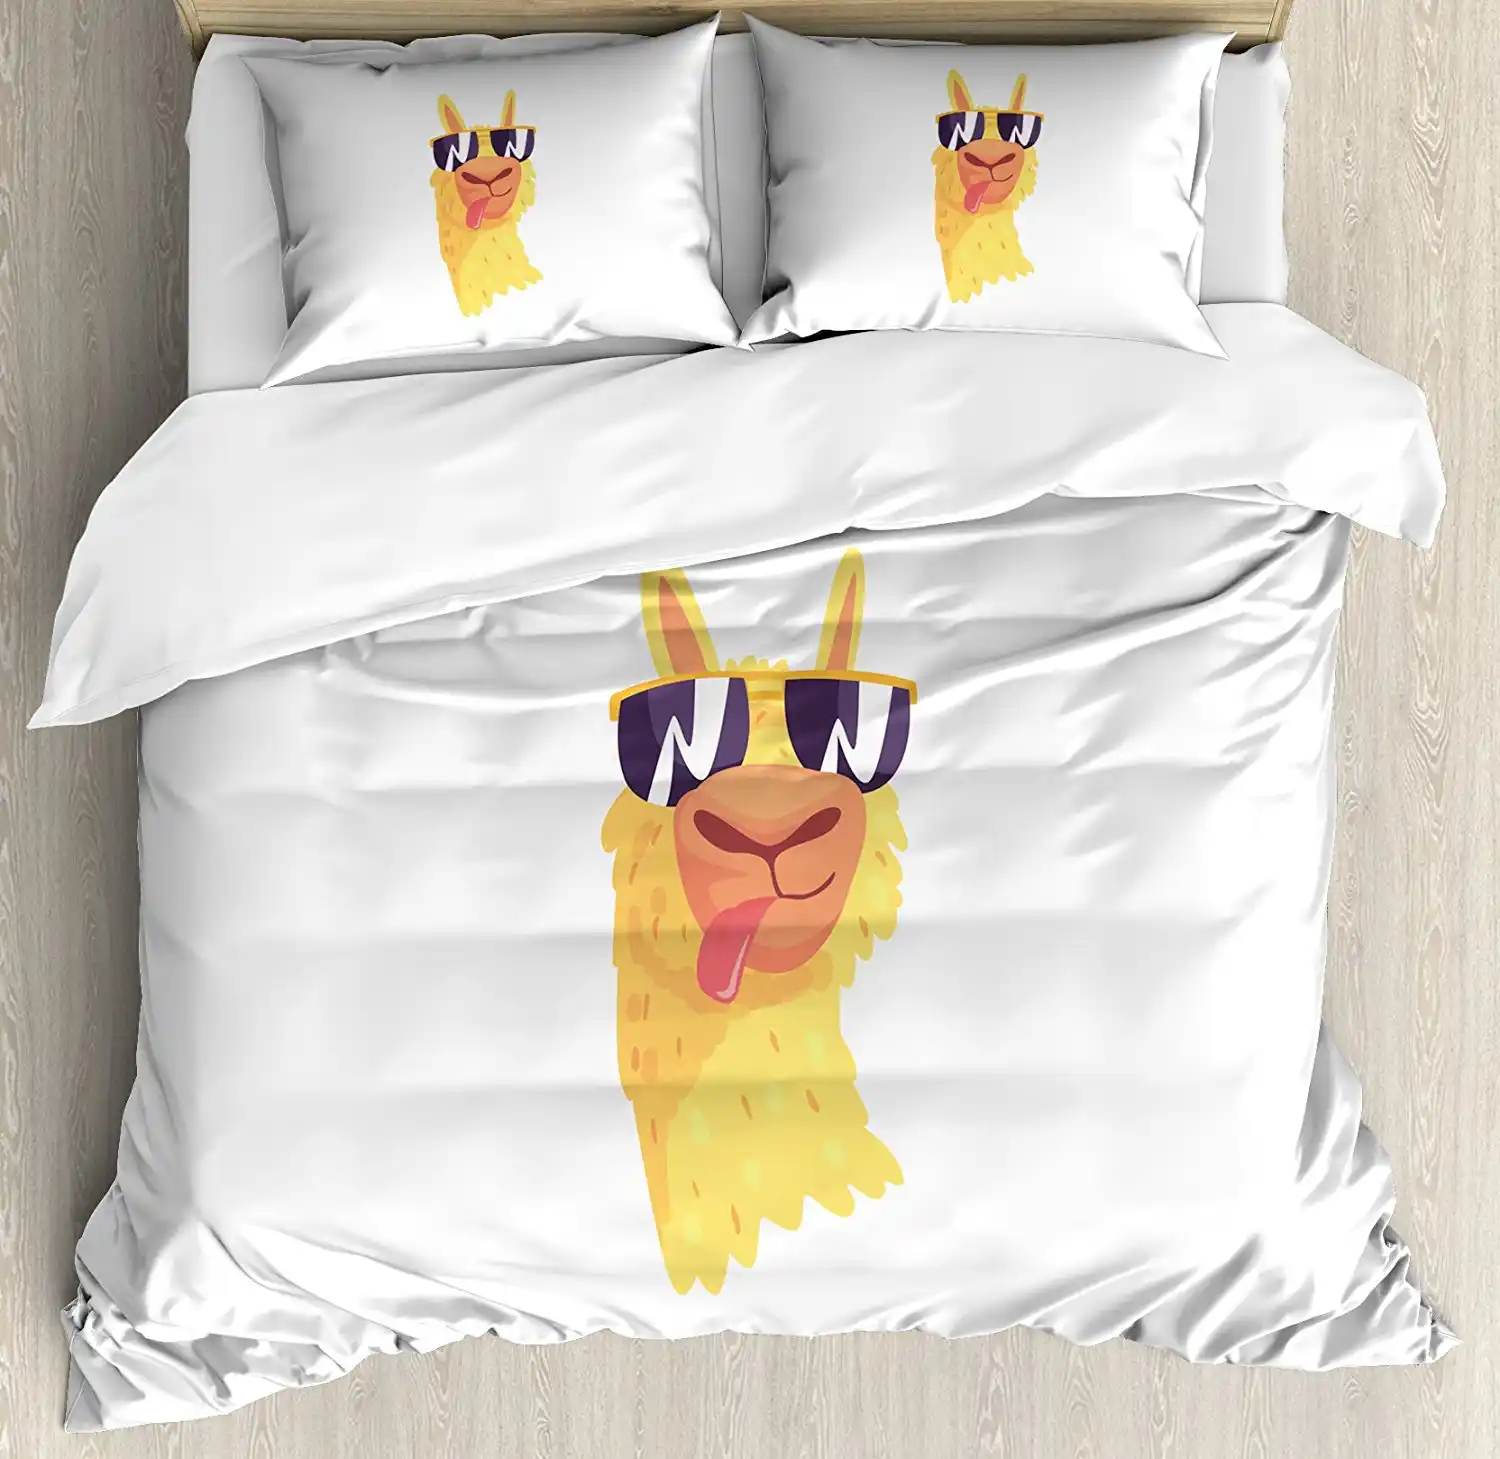 ラマ布団カバーセット面白いサングラスを身に着けファーム動物漫画キャラクター南アメリカマスコットデザイン4ピース寝具セット Aliexpress